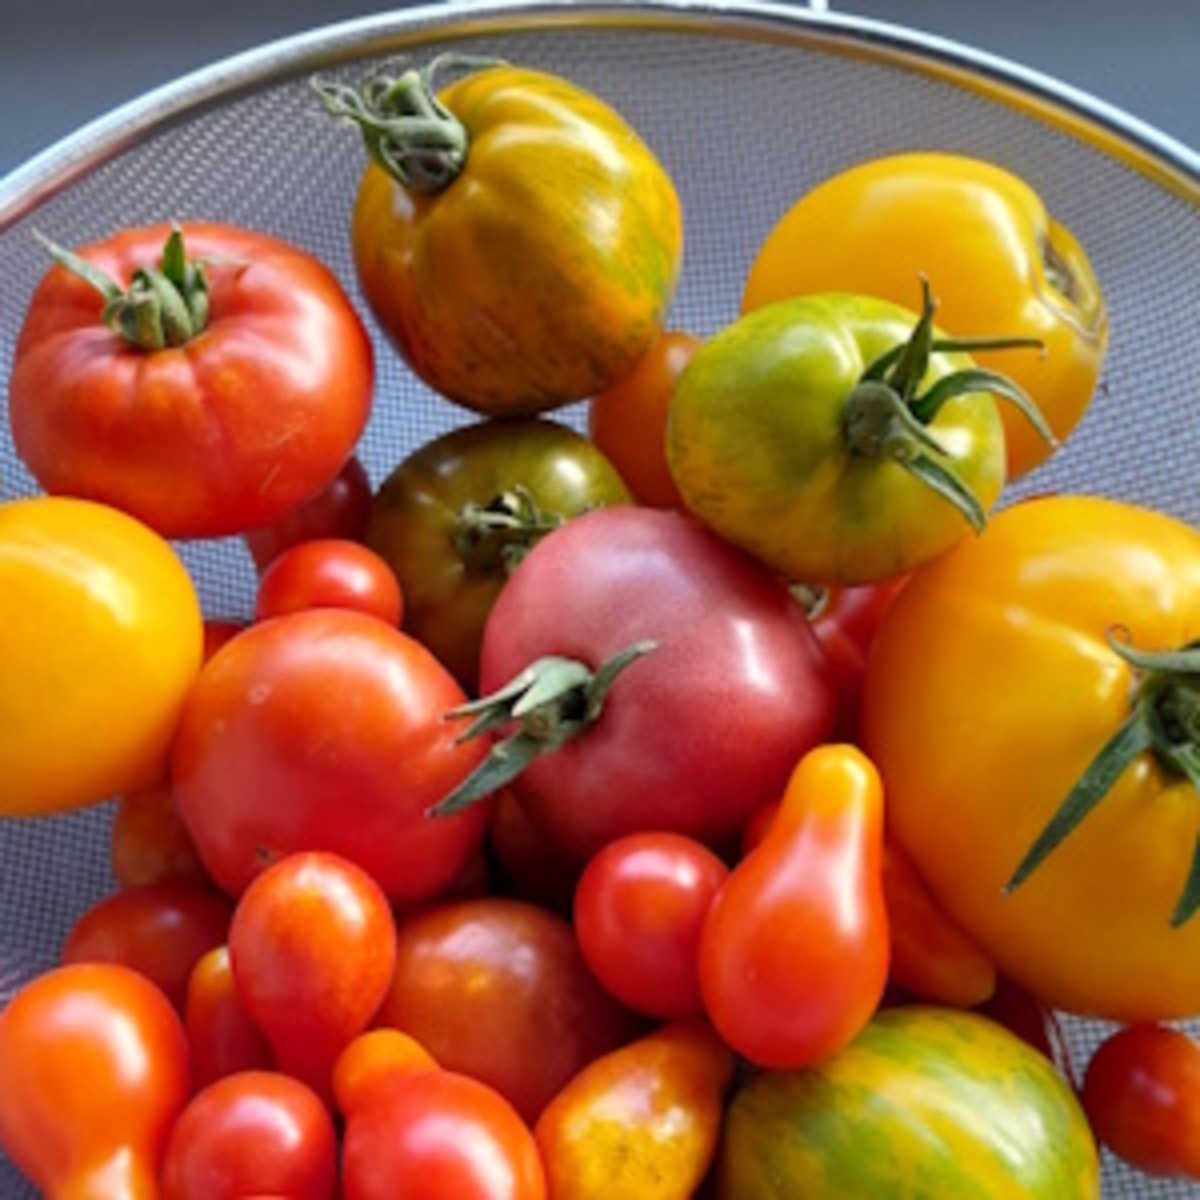 Les dernières tomates de l'année